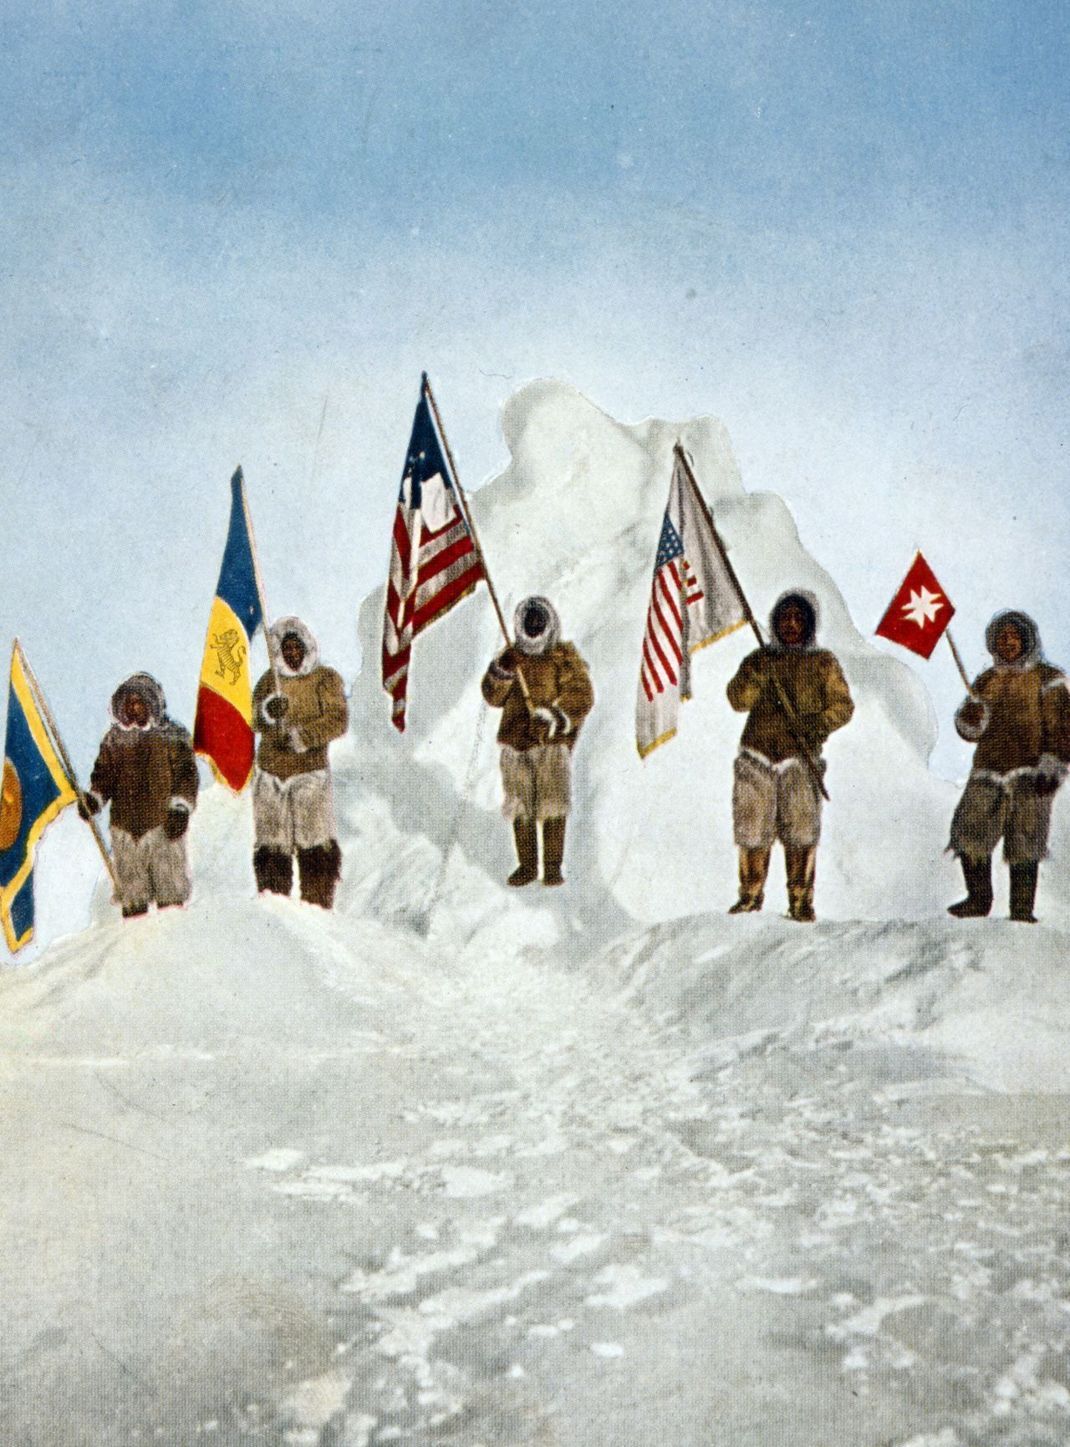 1909: Der US-Amerikaner Robert Peary (im Bild) behauptet, als erster Mensch am Nordpol gewesen zu sein. Doch sein Landsmann Frederick Cook will schon ein Jahr früher den Pol entdeckt haben.